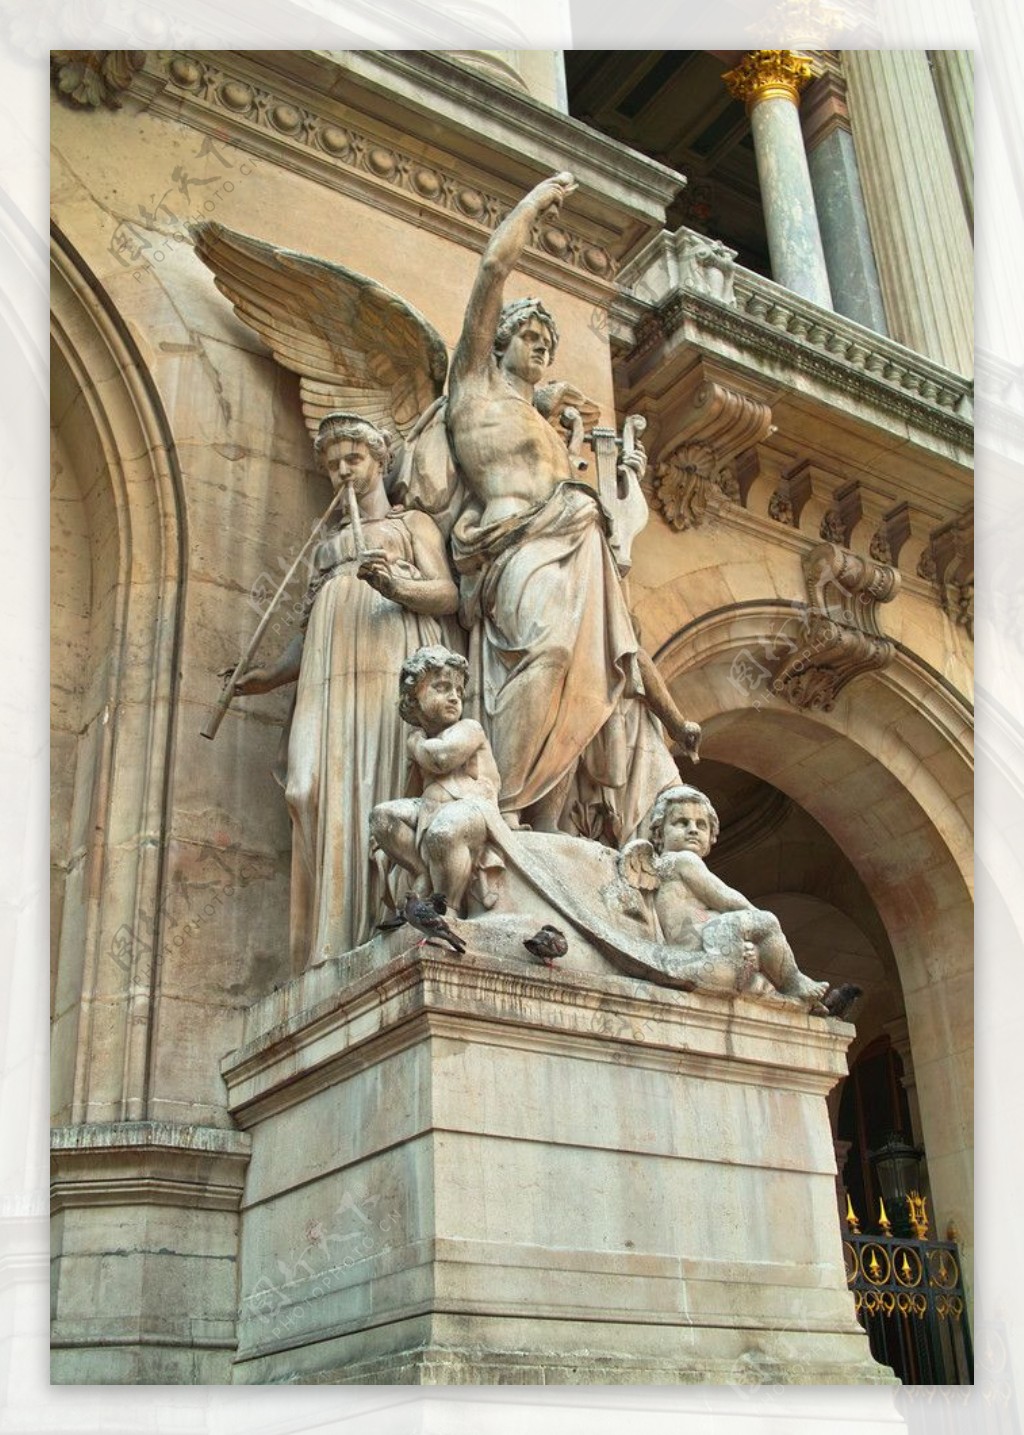 巴黎巴黎歌剧院门前的雕塑图片